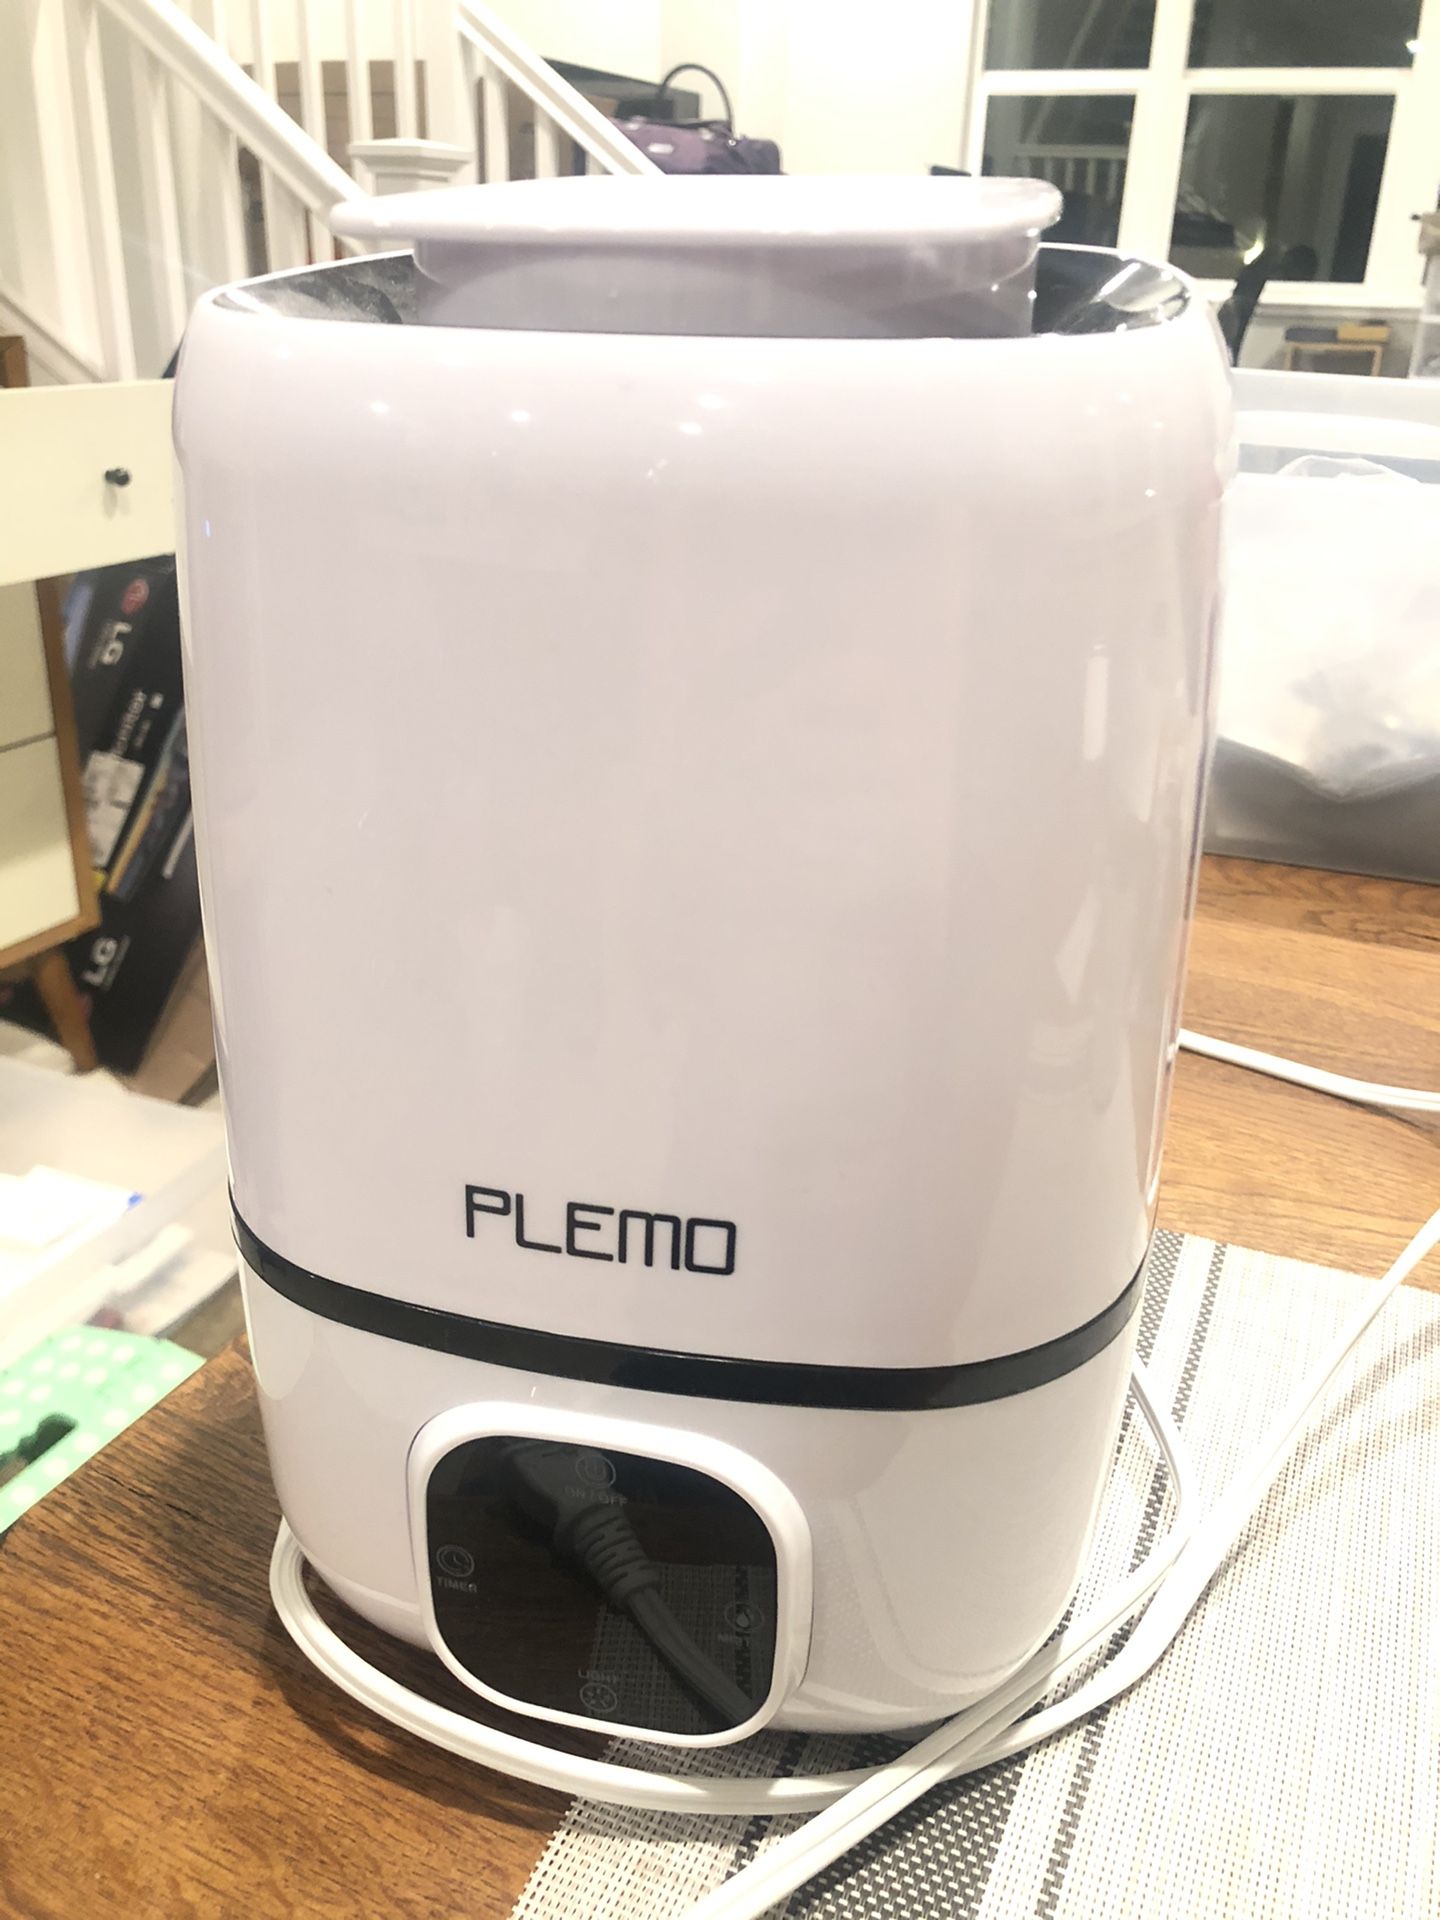 Plemo humidifier/oil diffuser